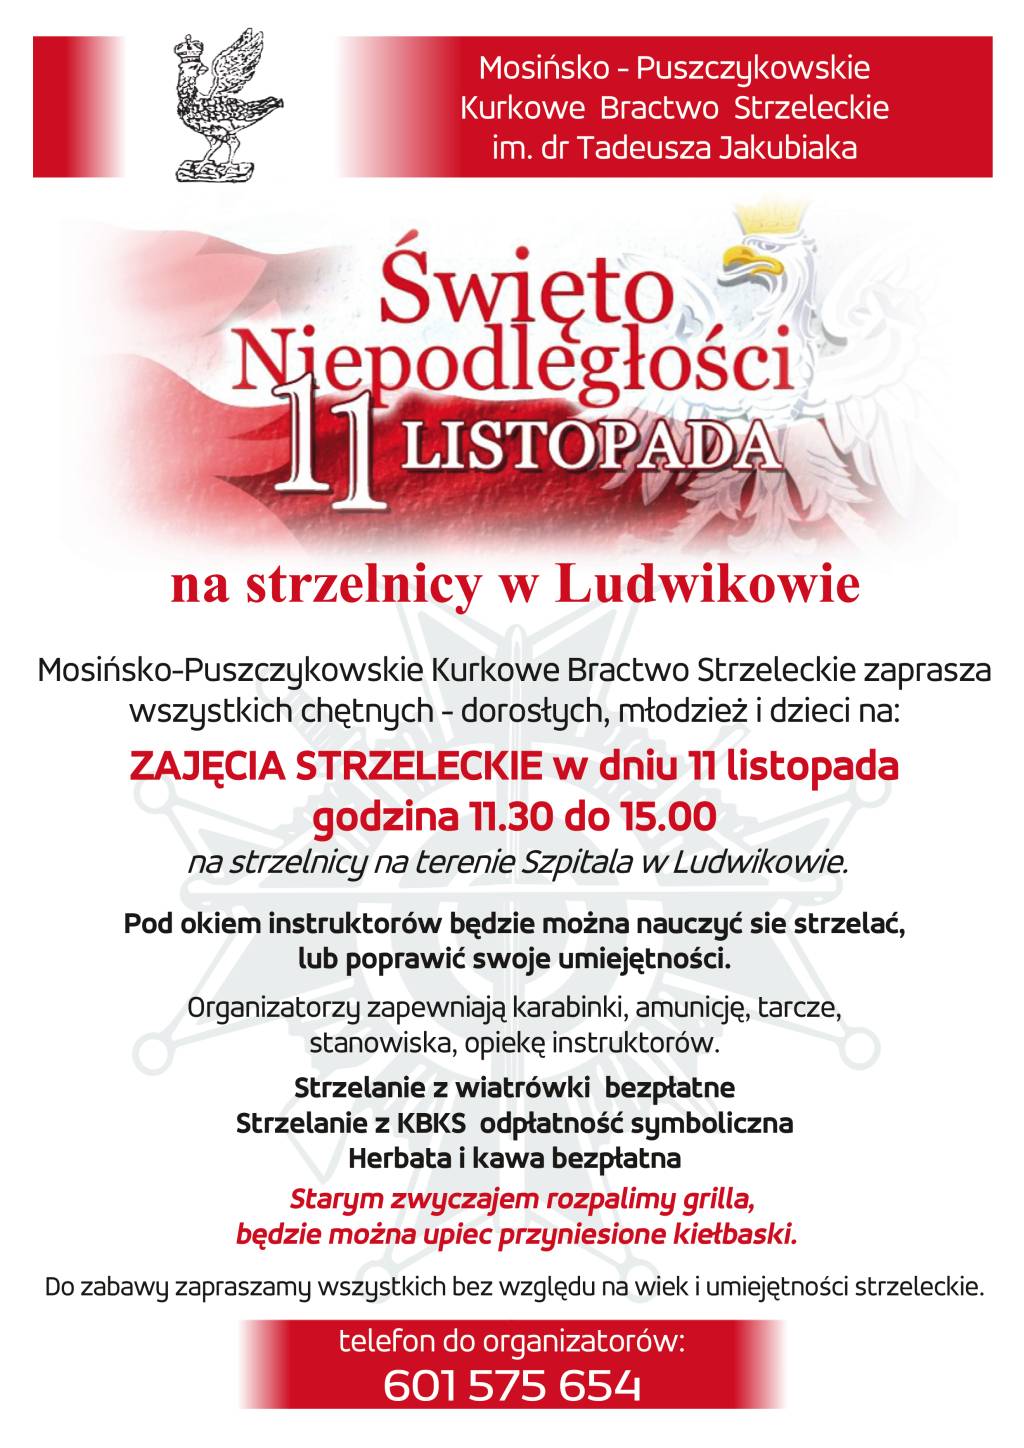 informacje na temat Święta Niepodległości 11 listopada na strzelnicy w Ludwikowie. Tytuł napisany u gódy w kolorze czerwonym na fladze Polski. Pozostały tekst w kolorze czarnym na biały tle.